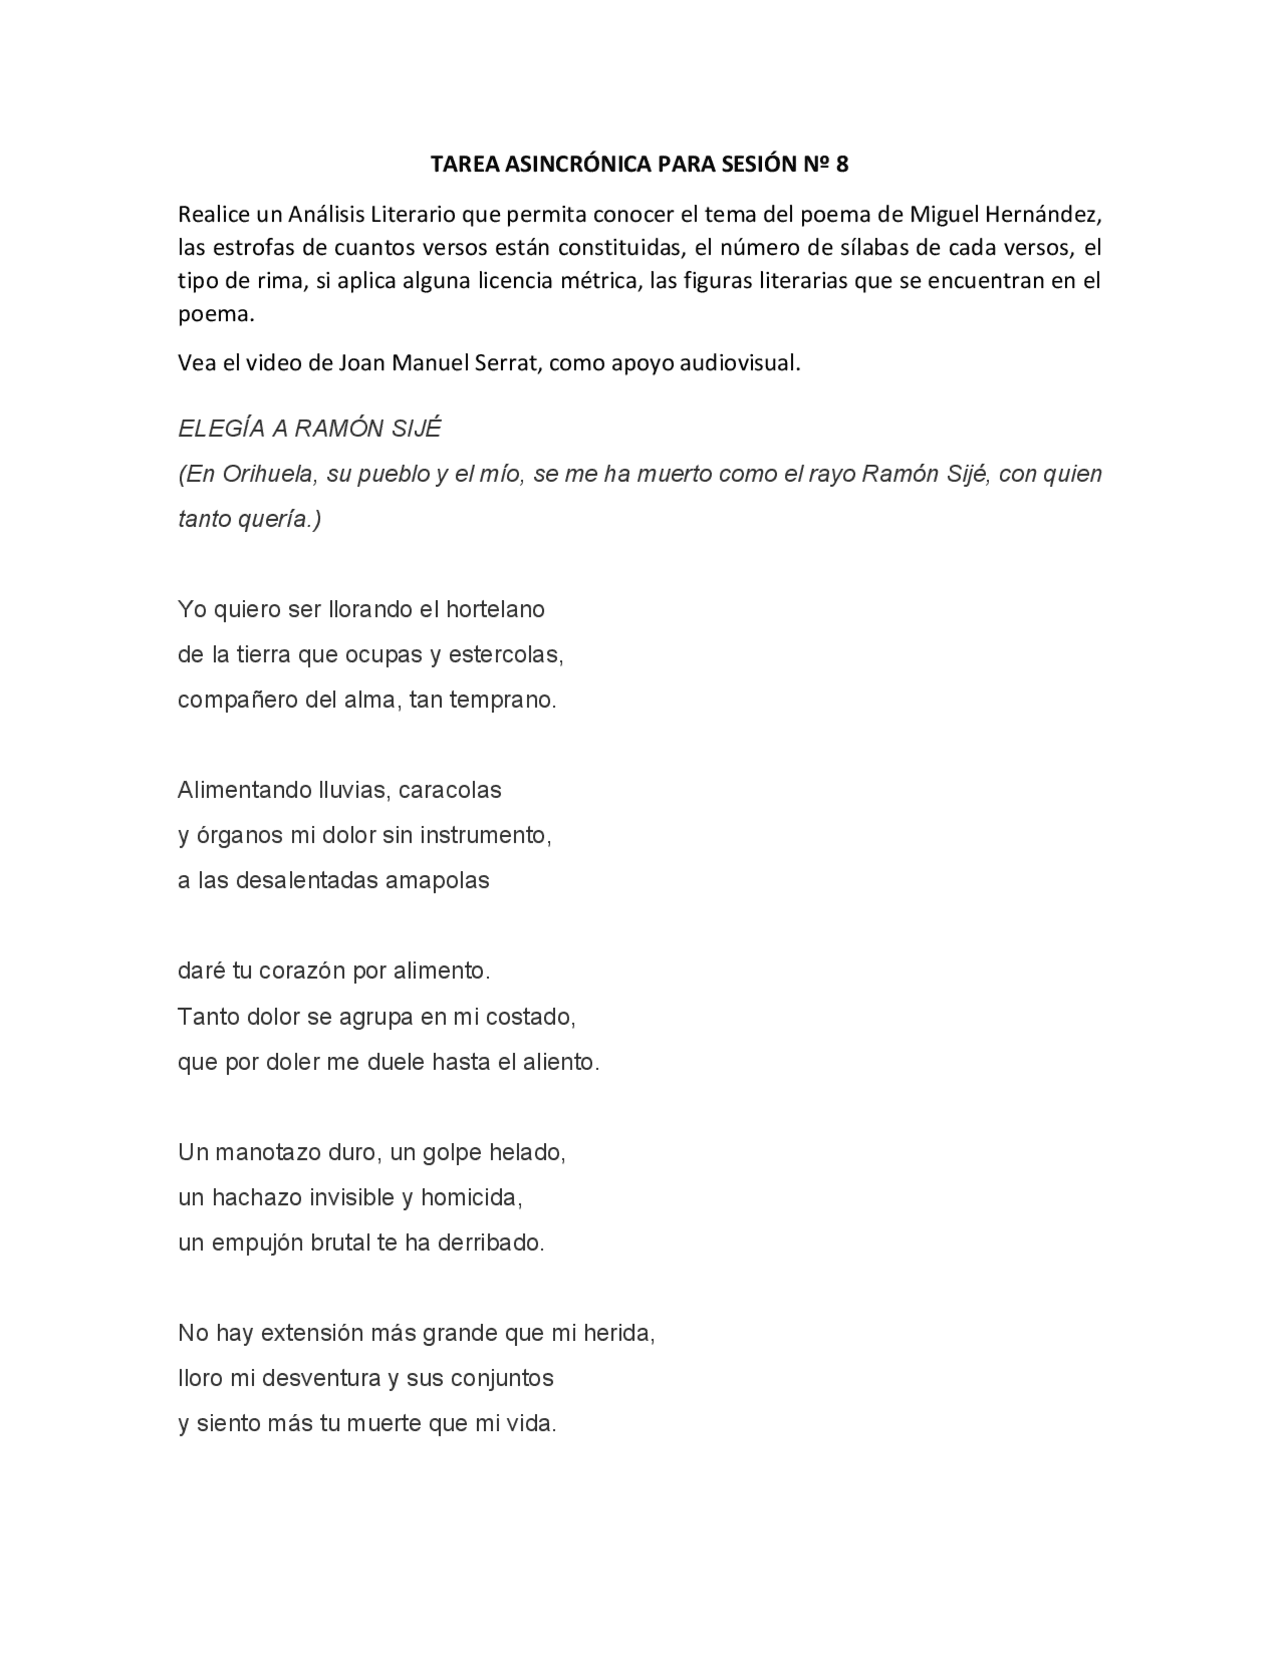 Yo quiero ser llorando el hortelano: un análisis profundo del poema de Antonio Machado